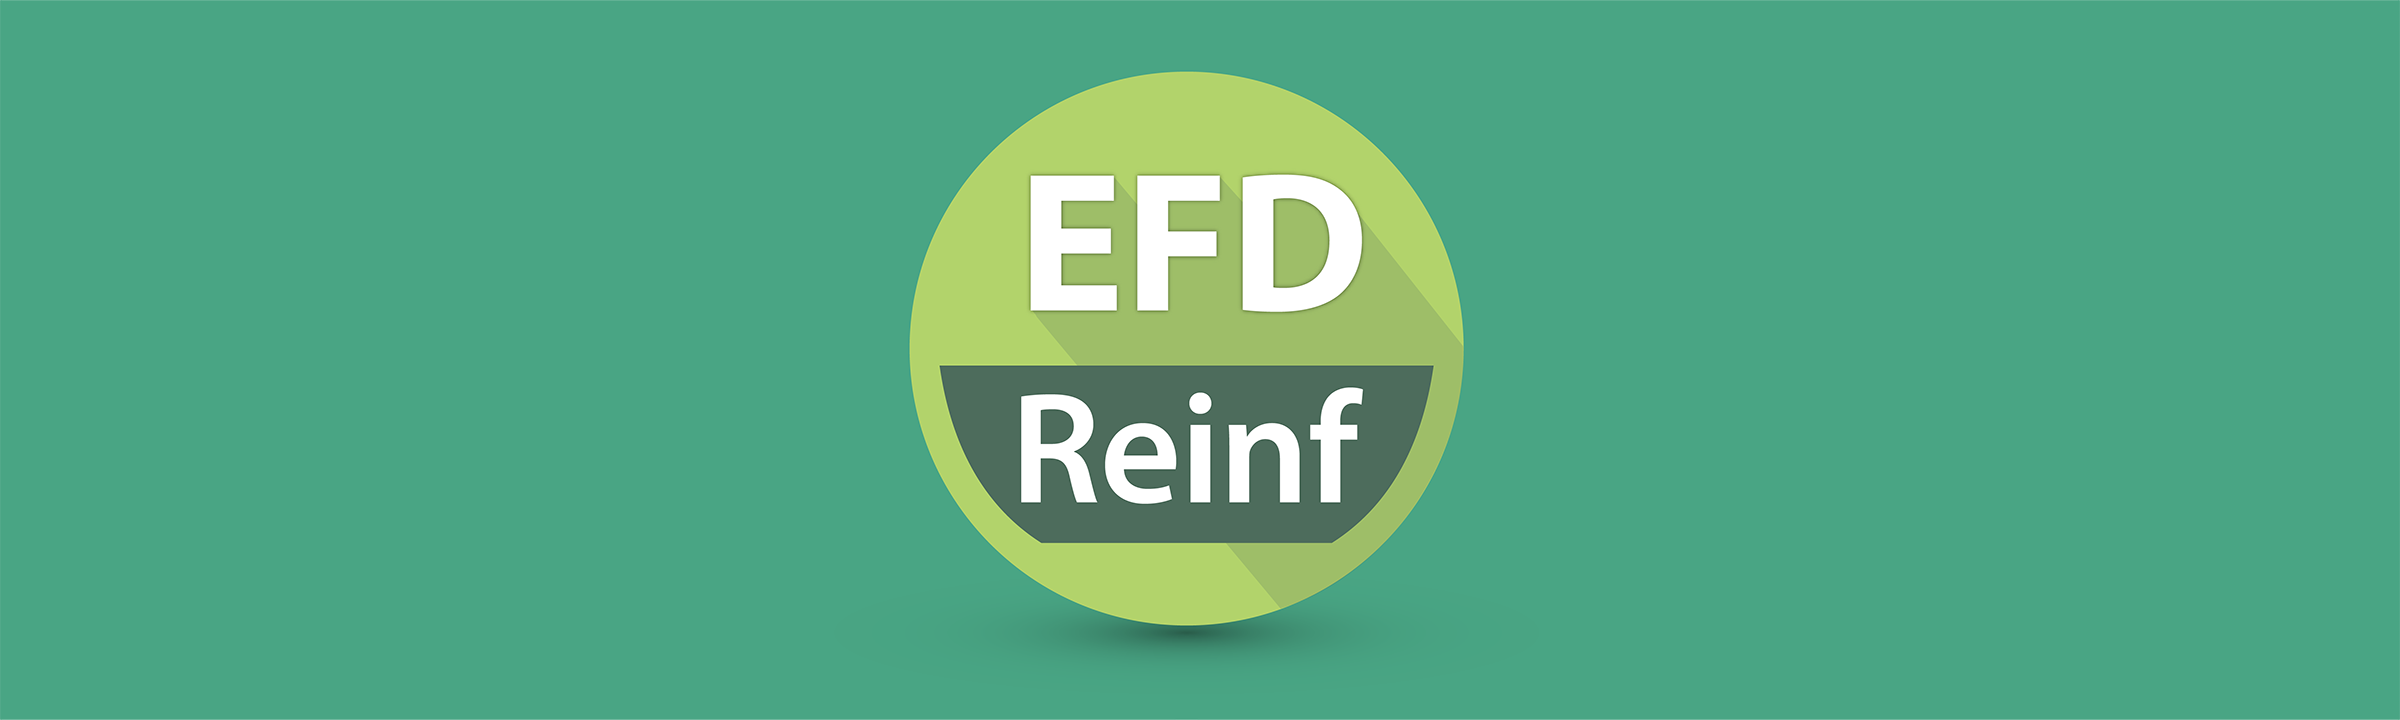 Entendendo melhor a EFD-Reinf, seus prazos e obrigatoriedades